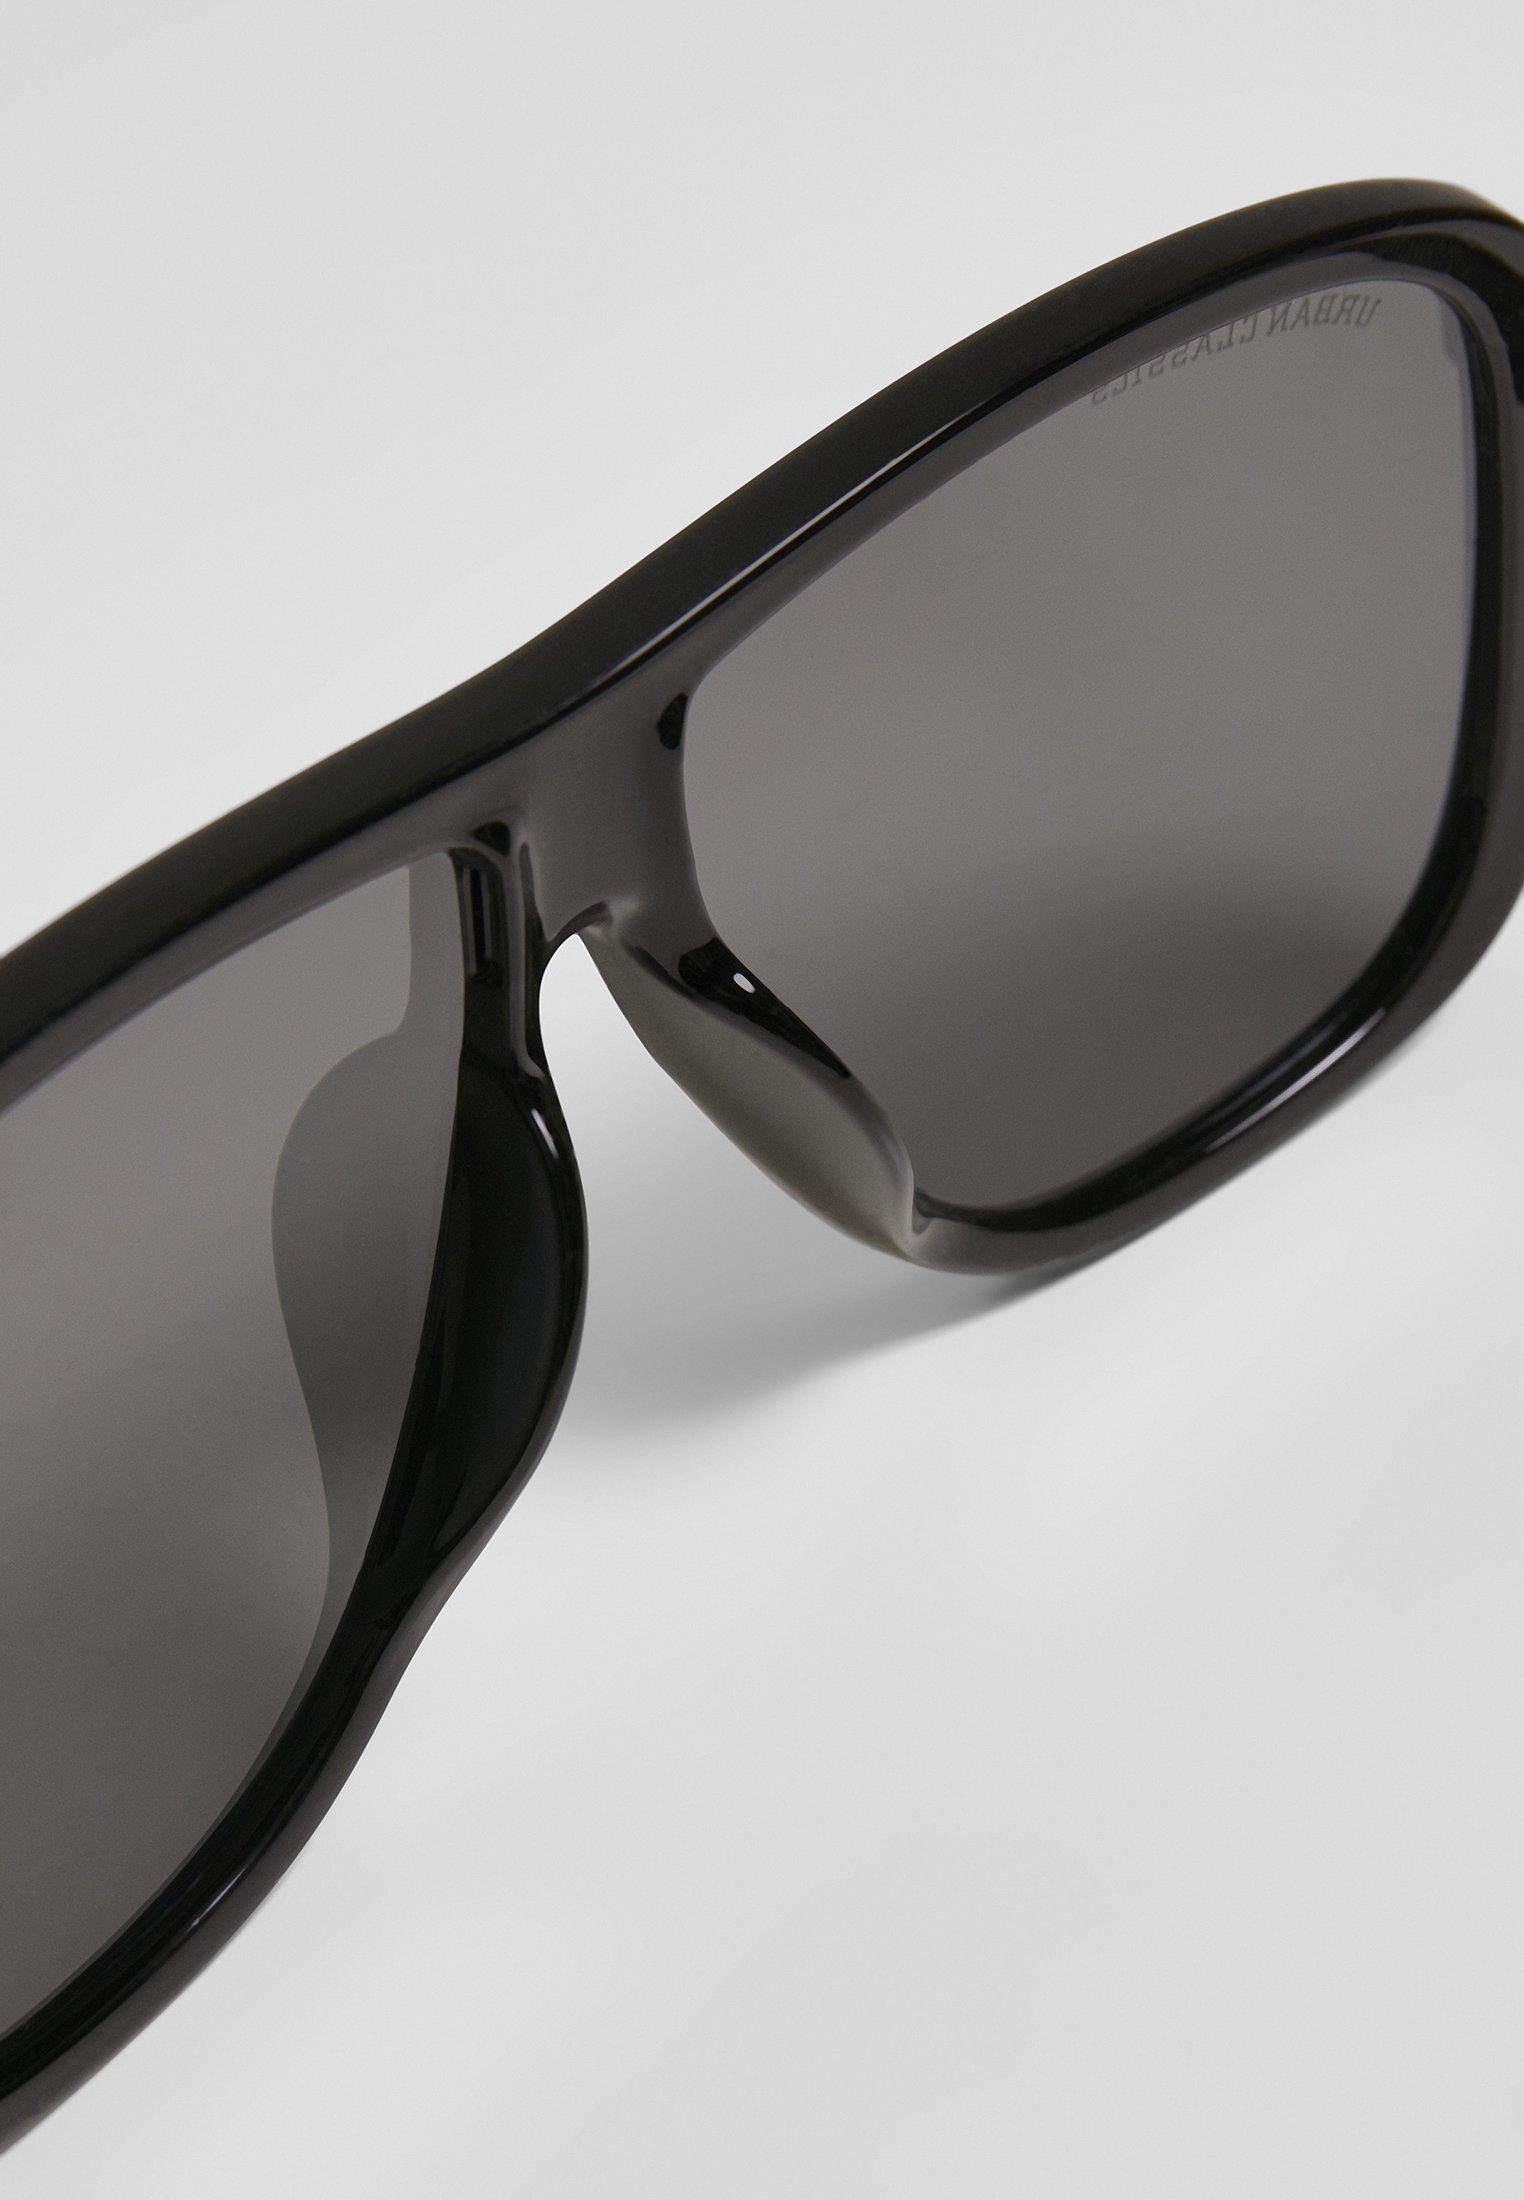 2-Pack Sonnenbrille Sunglasses Milos URBAN Unisex CLASSICS